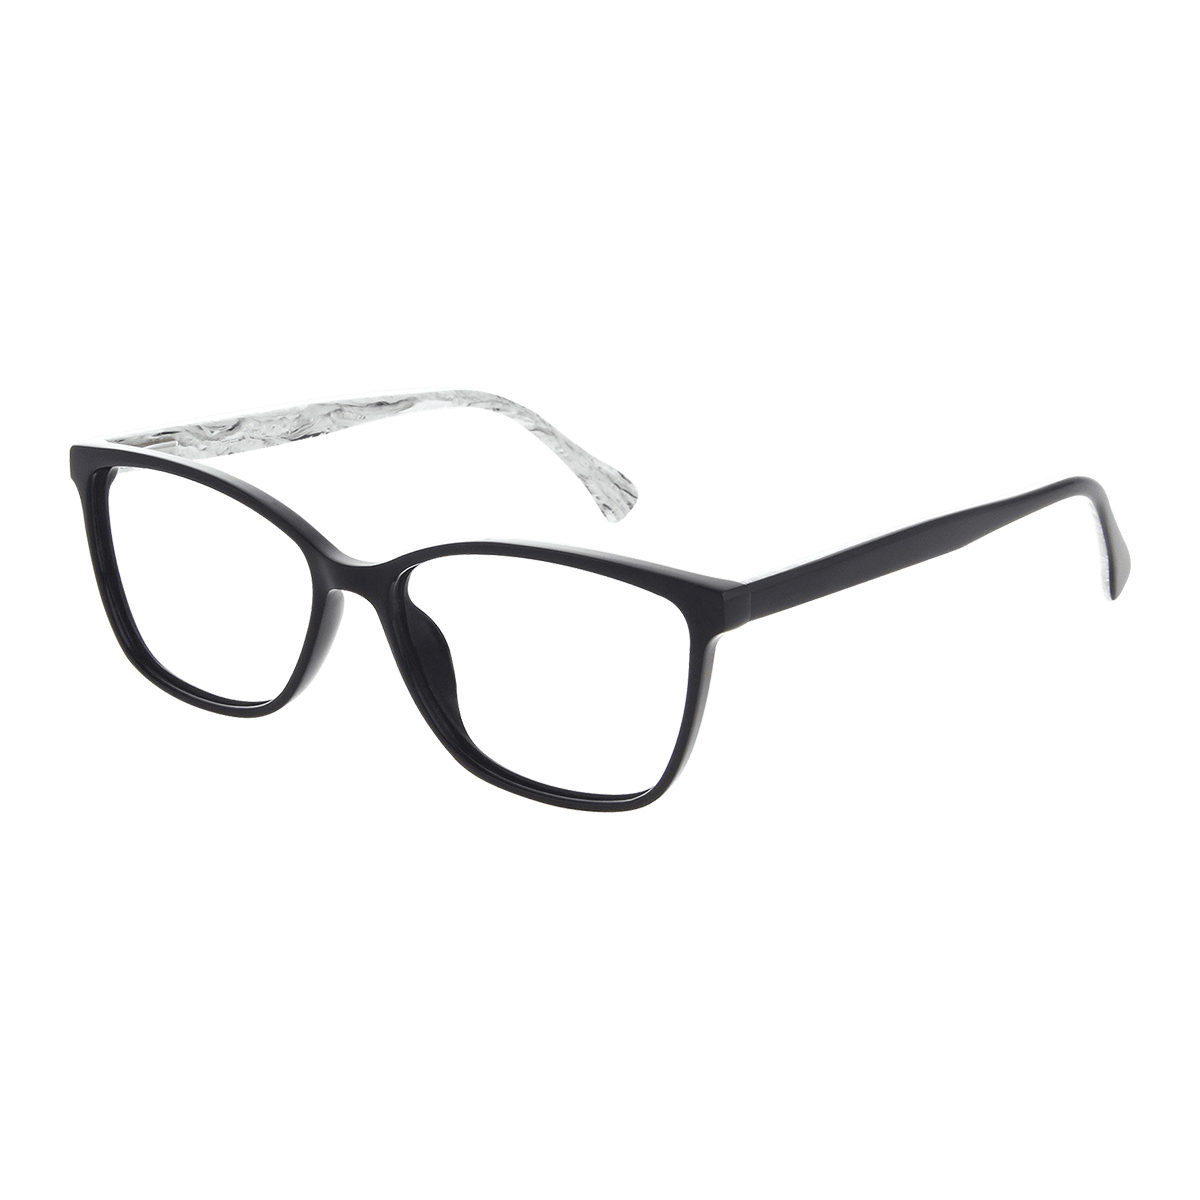 Tanais - Square Black Reading Glasses for Women